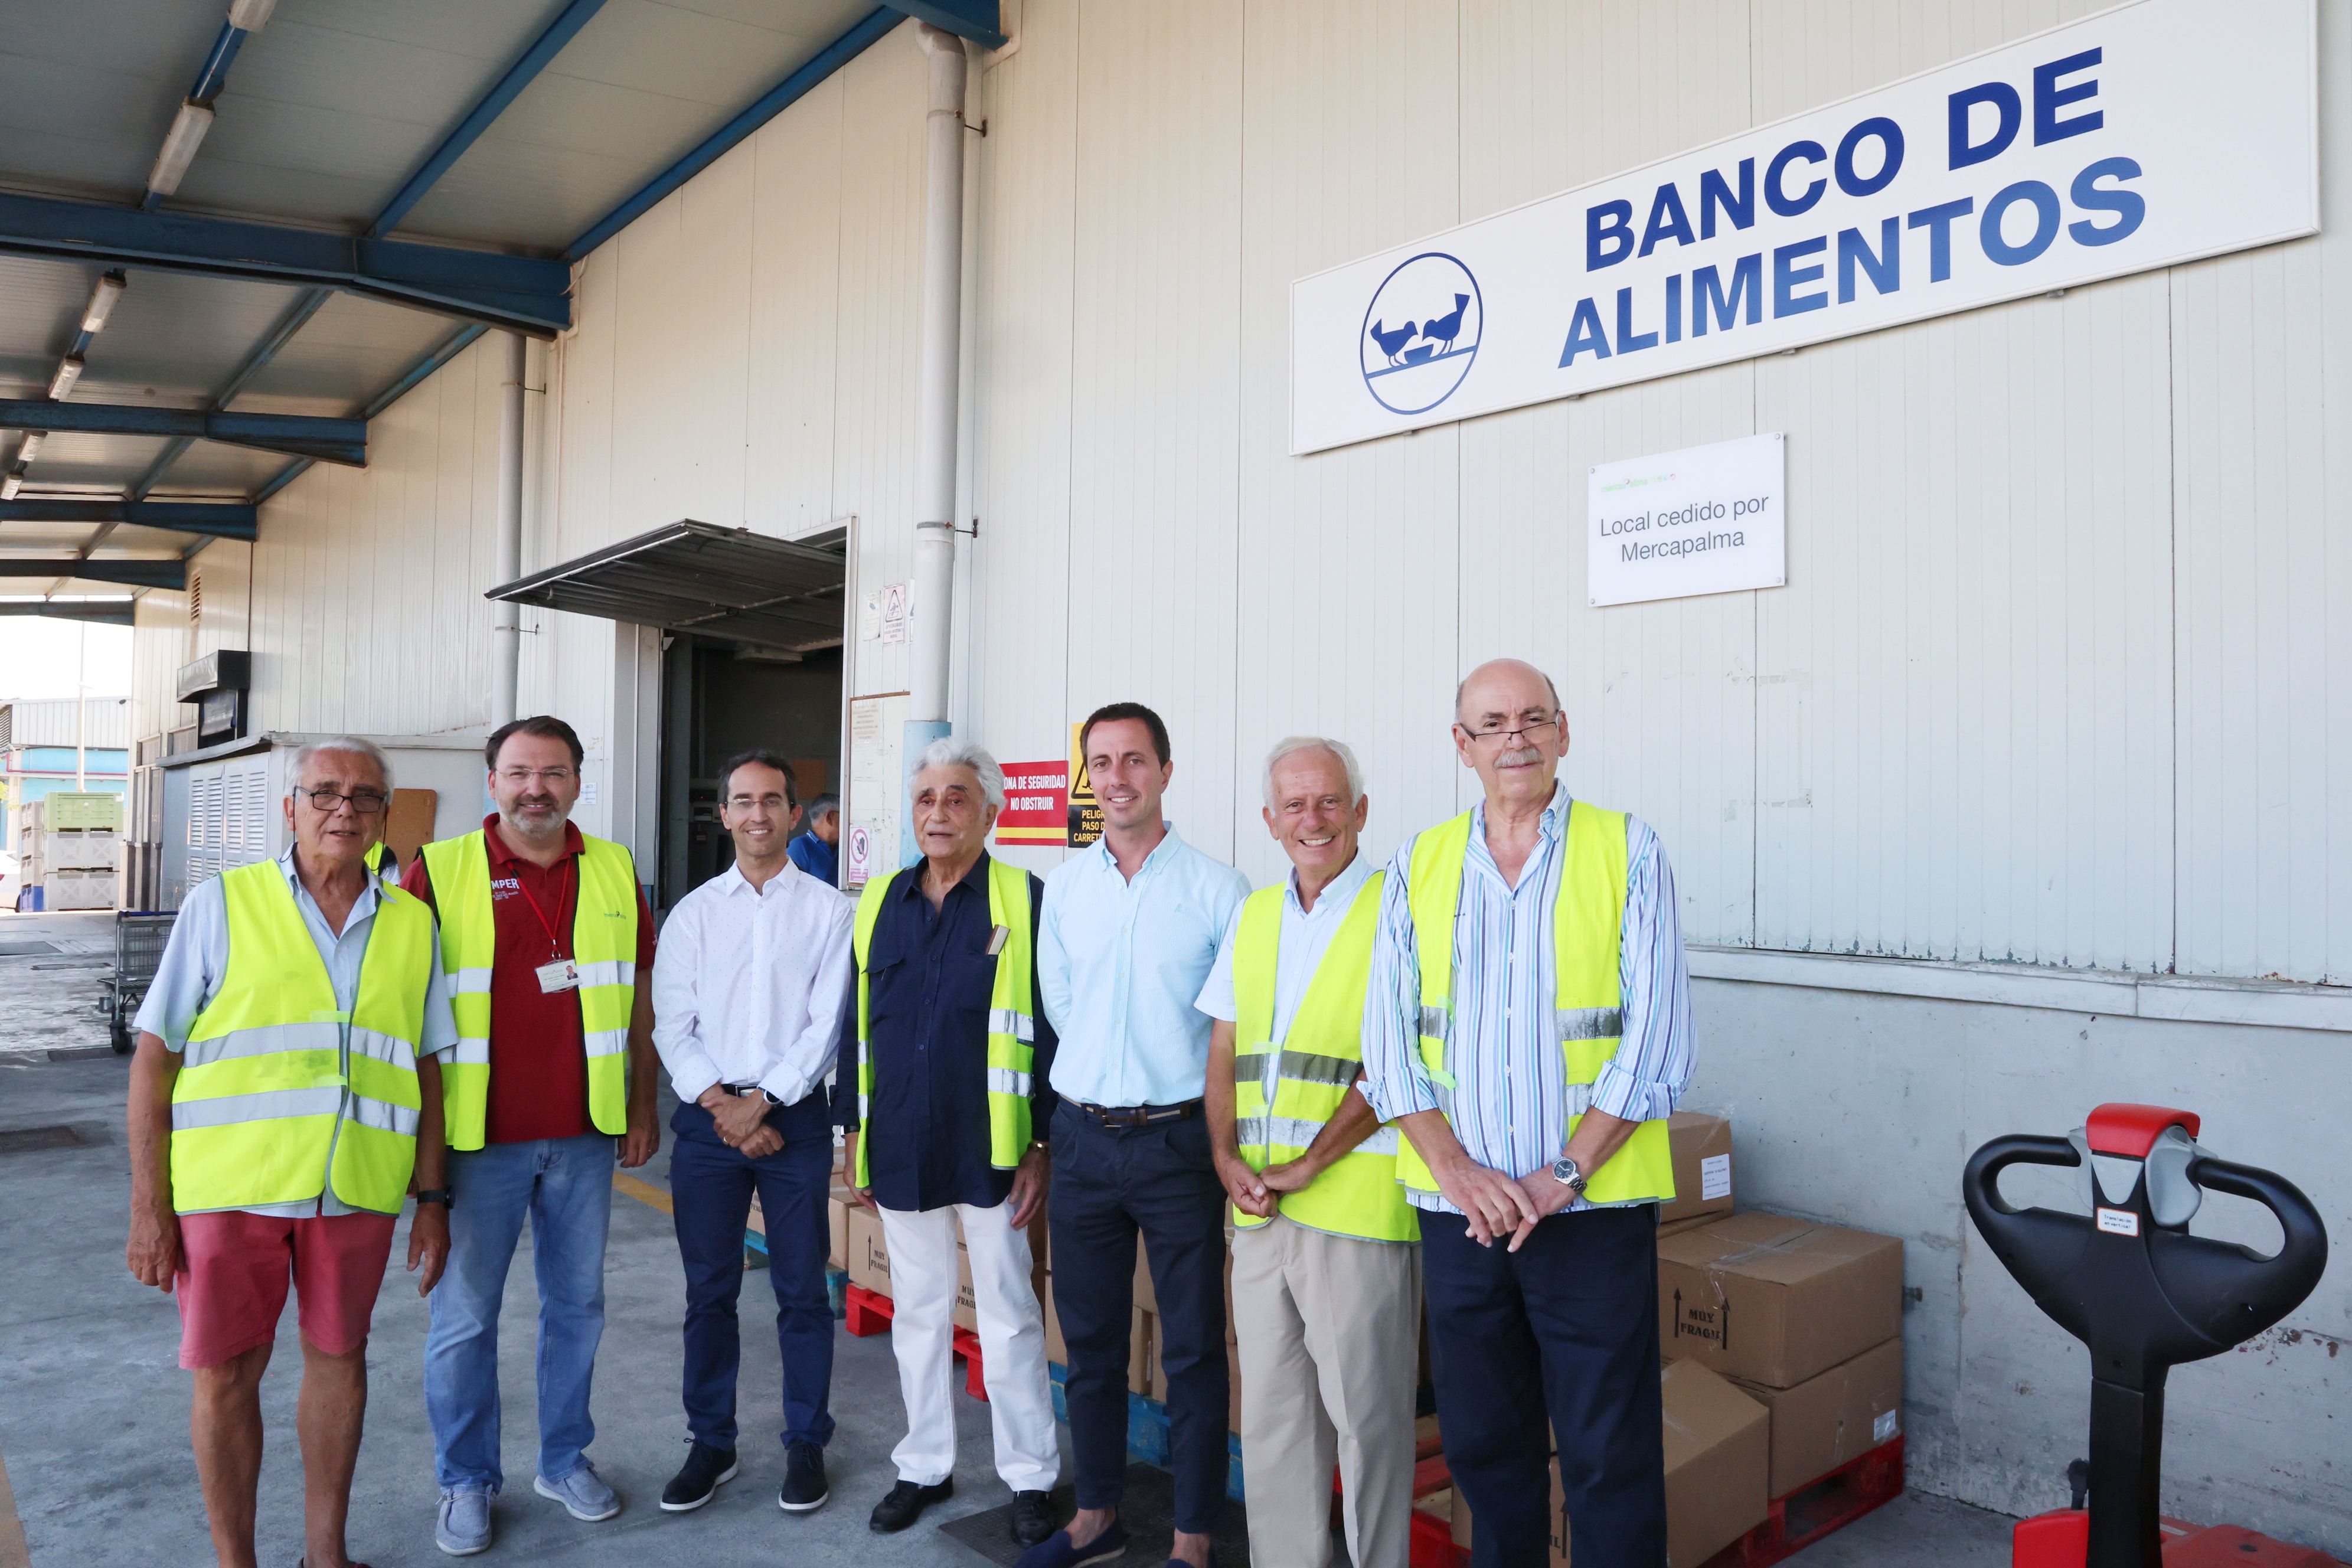 El president del Consell de Mallorca, Llorenç Galmés, visita el Banc d'Aliments acompanyat del conseller de Benestar Social, Guillermo Sánchez.